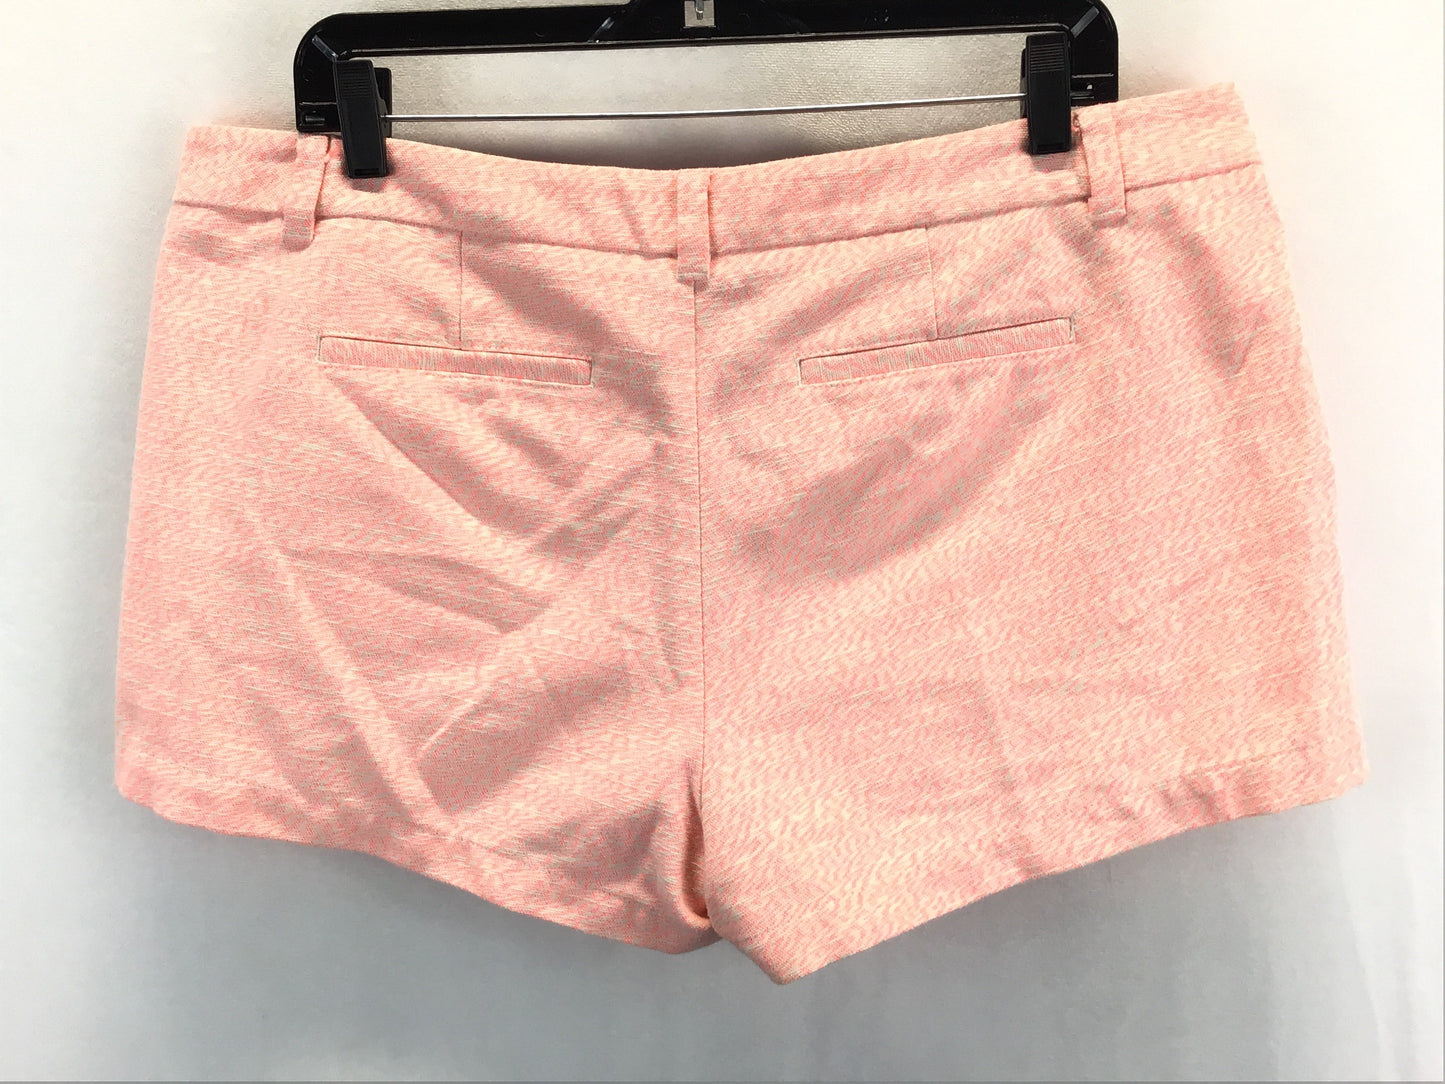 Peach Shorts Merona, Size 14